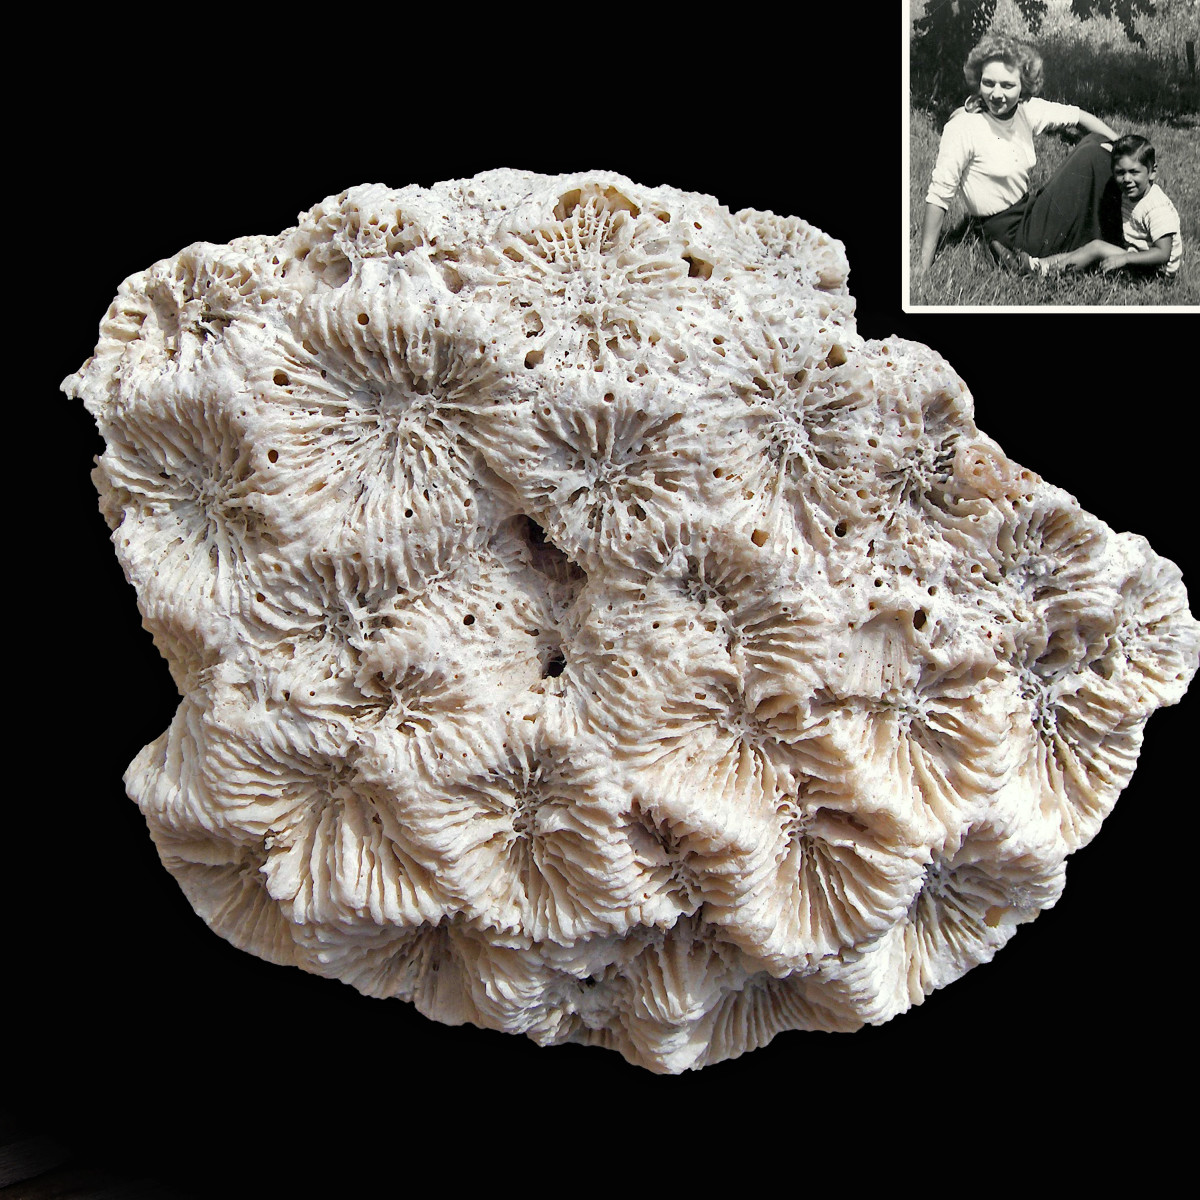 coral fossils identification, gorąca wyprzedaż Hit 86%er rabatu -  